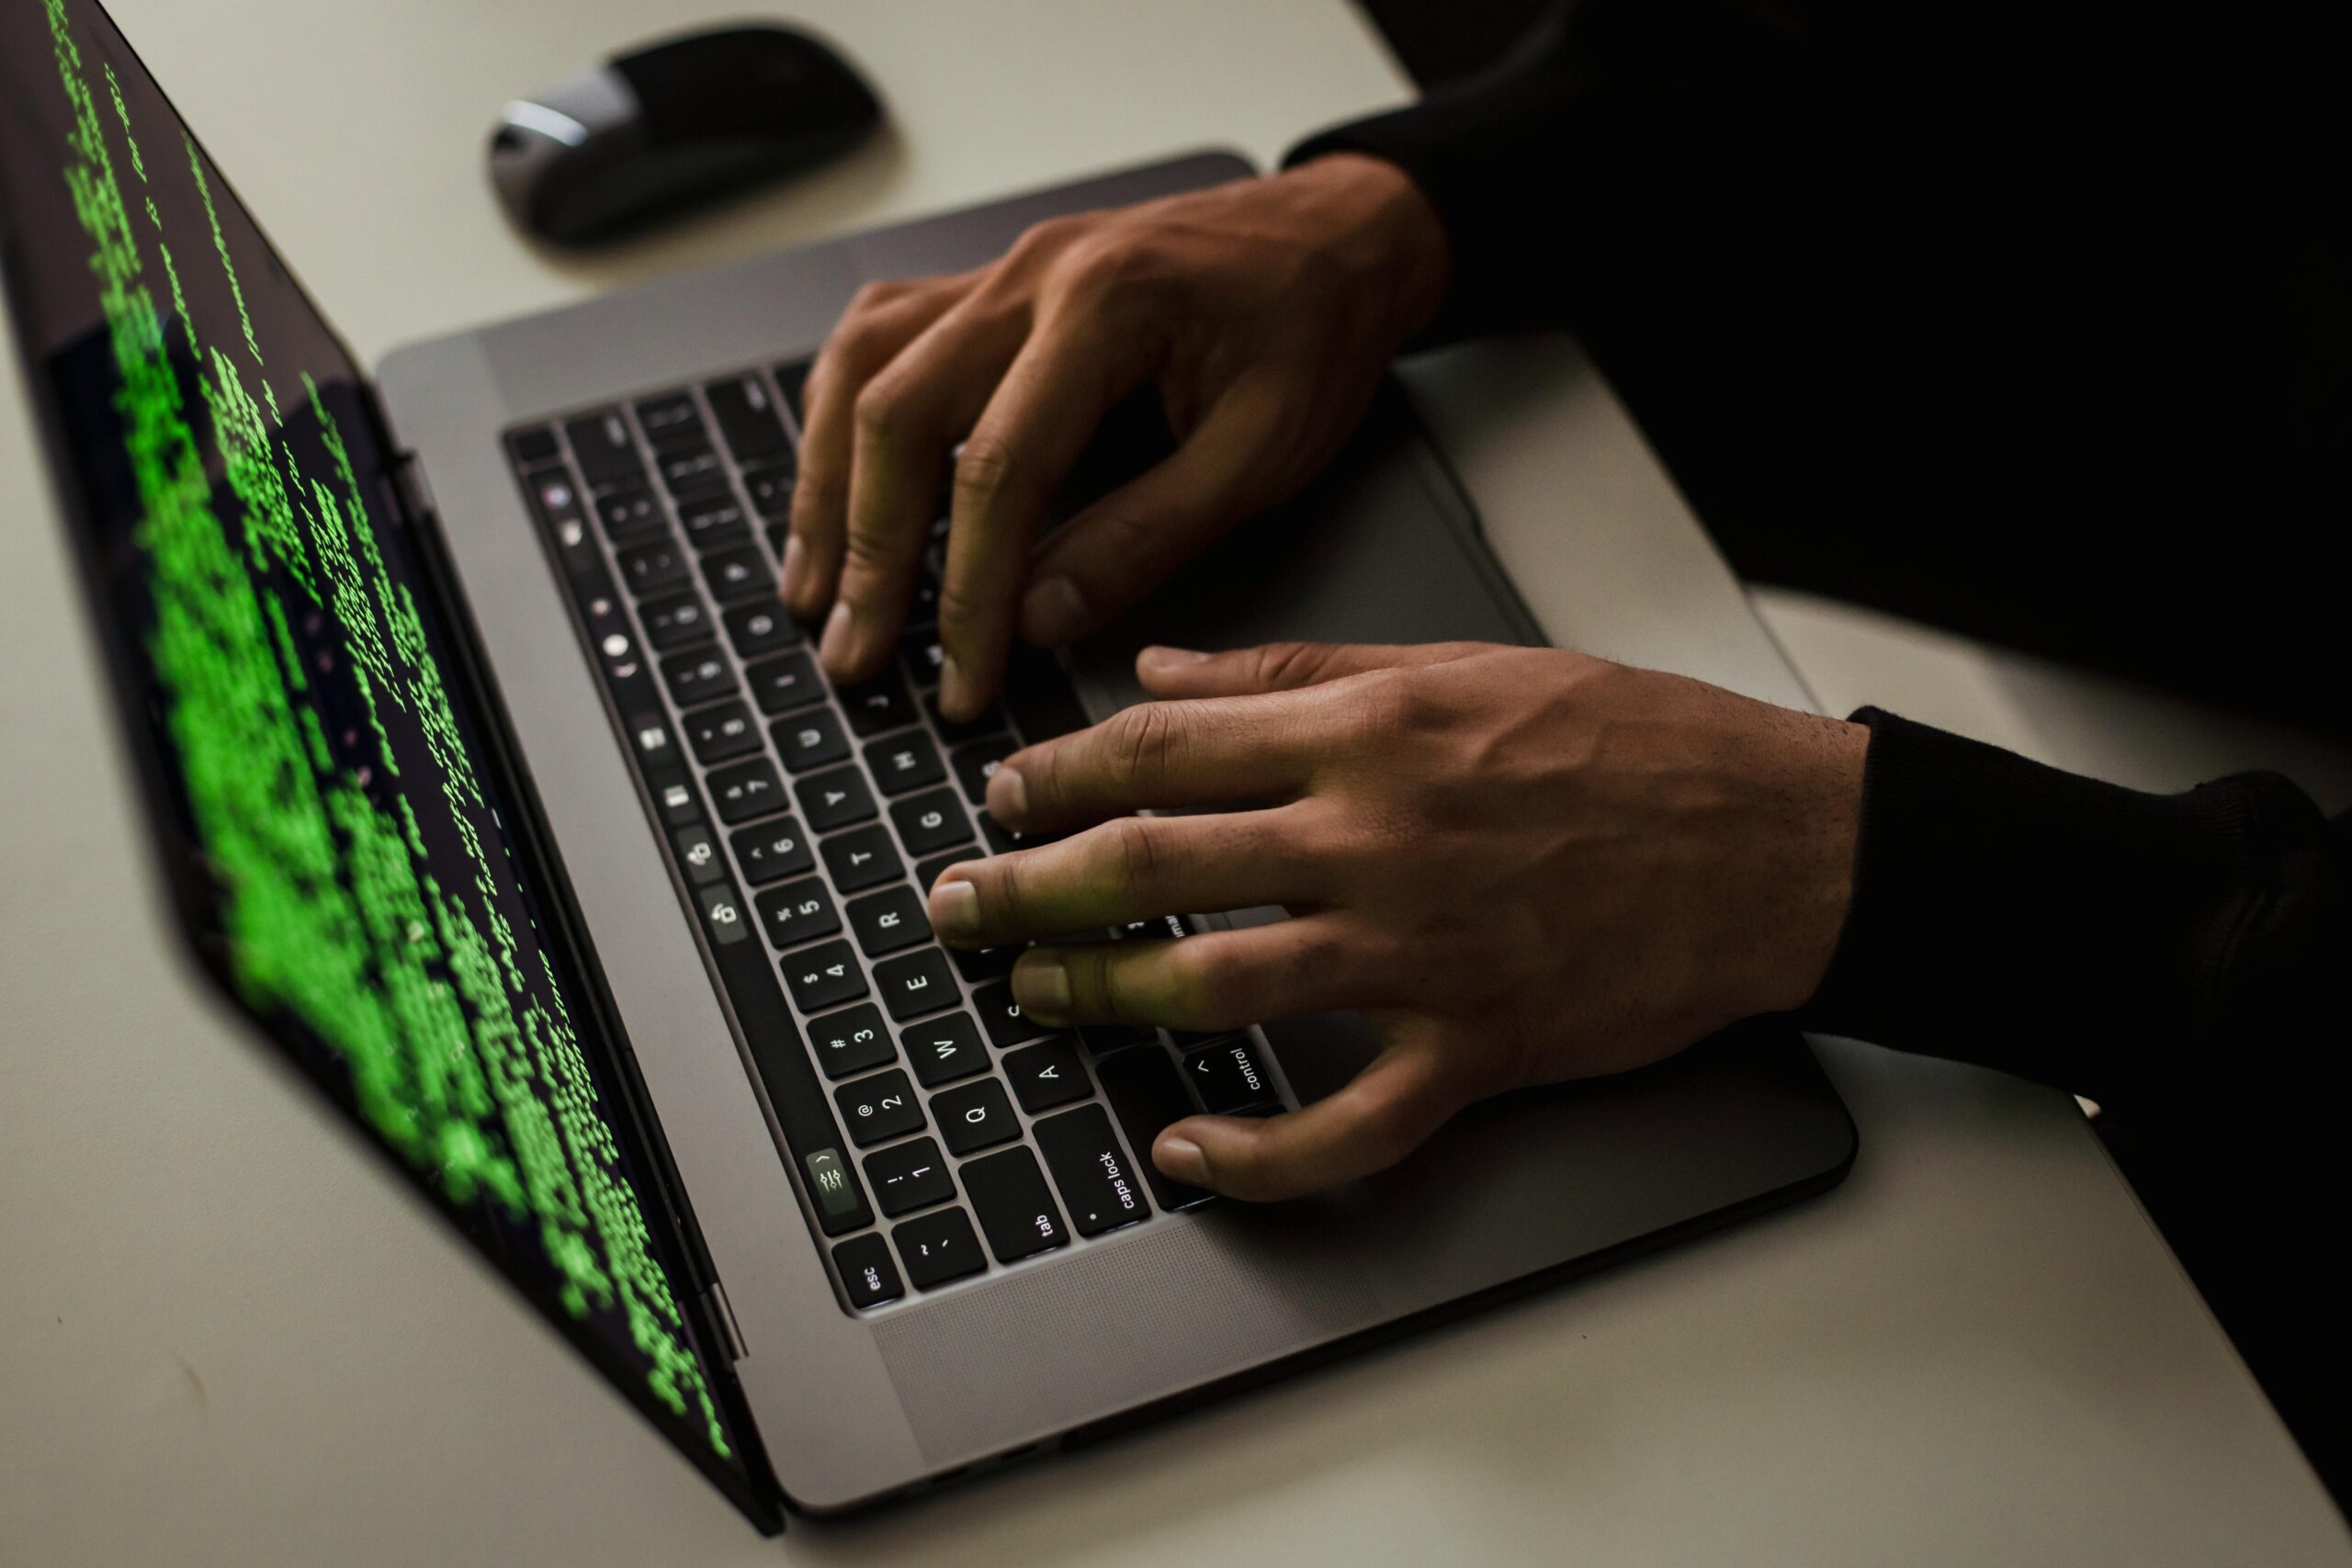 Ηλεκτρονικές απάτες: Πώς να προστατευτούμε – Ο επικεφαλής της Δίωξης Ηλεκτρονικού Εγκλήματος στο ΕΡΤNews